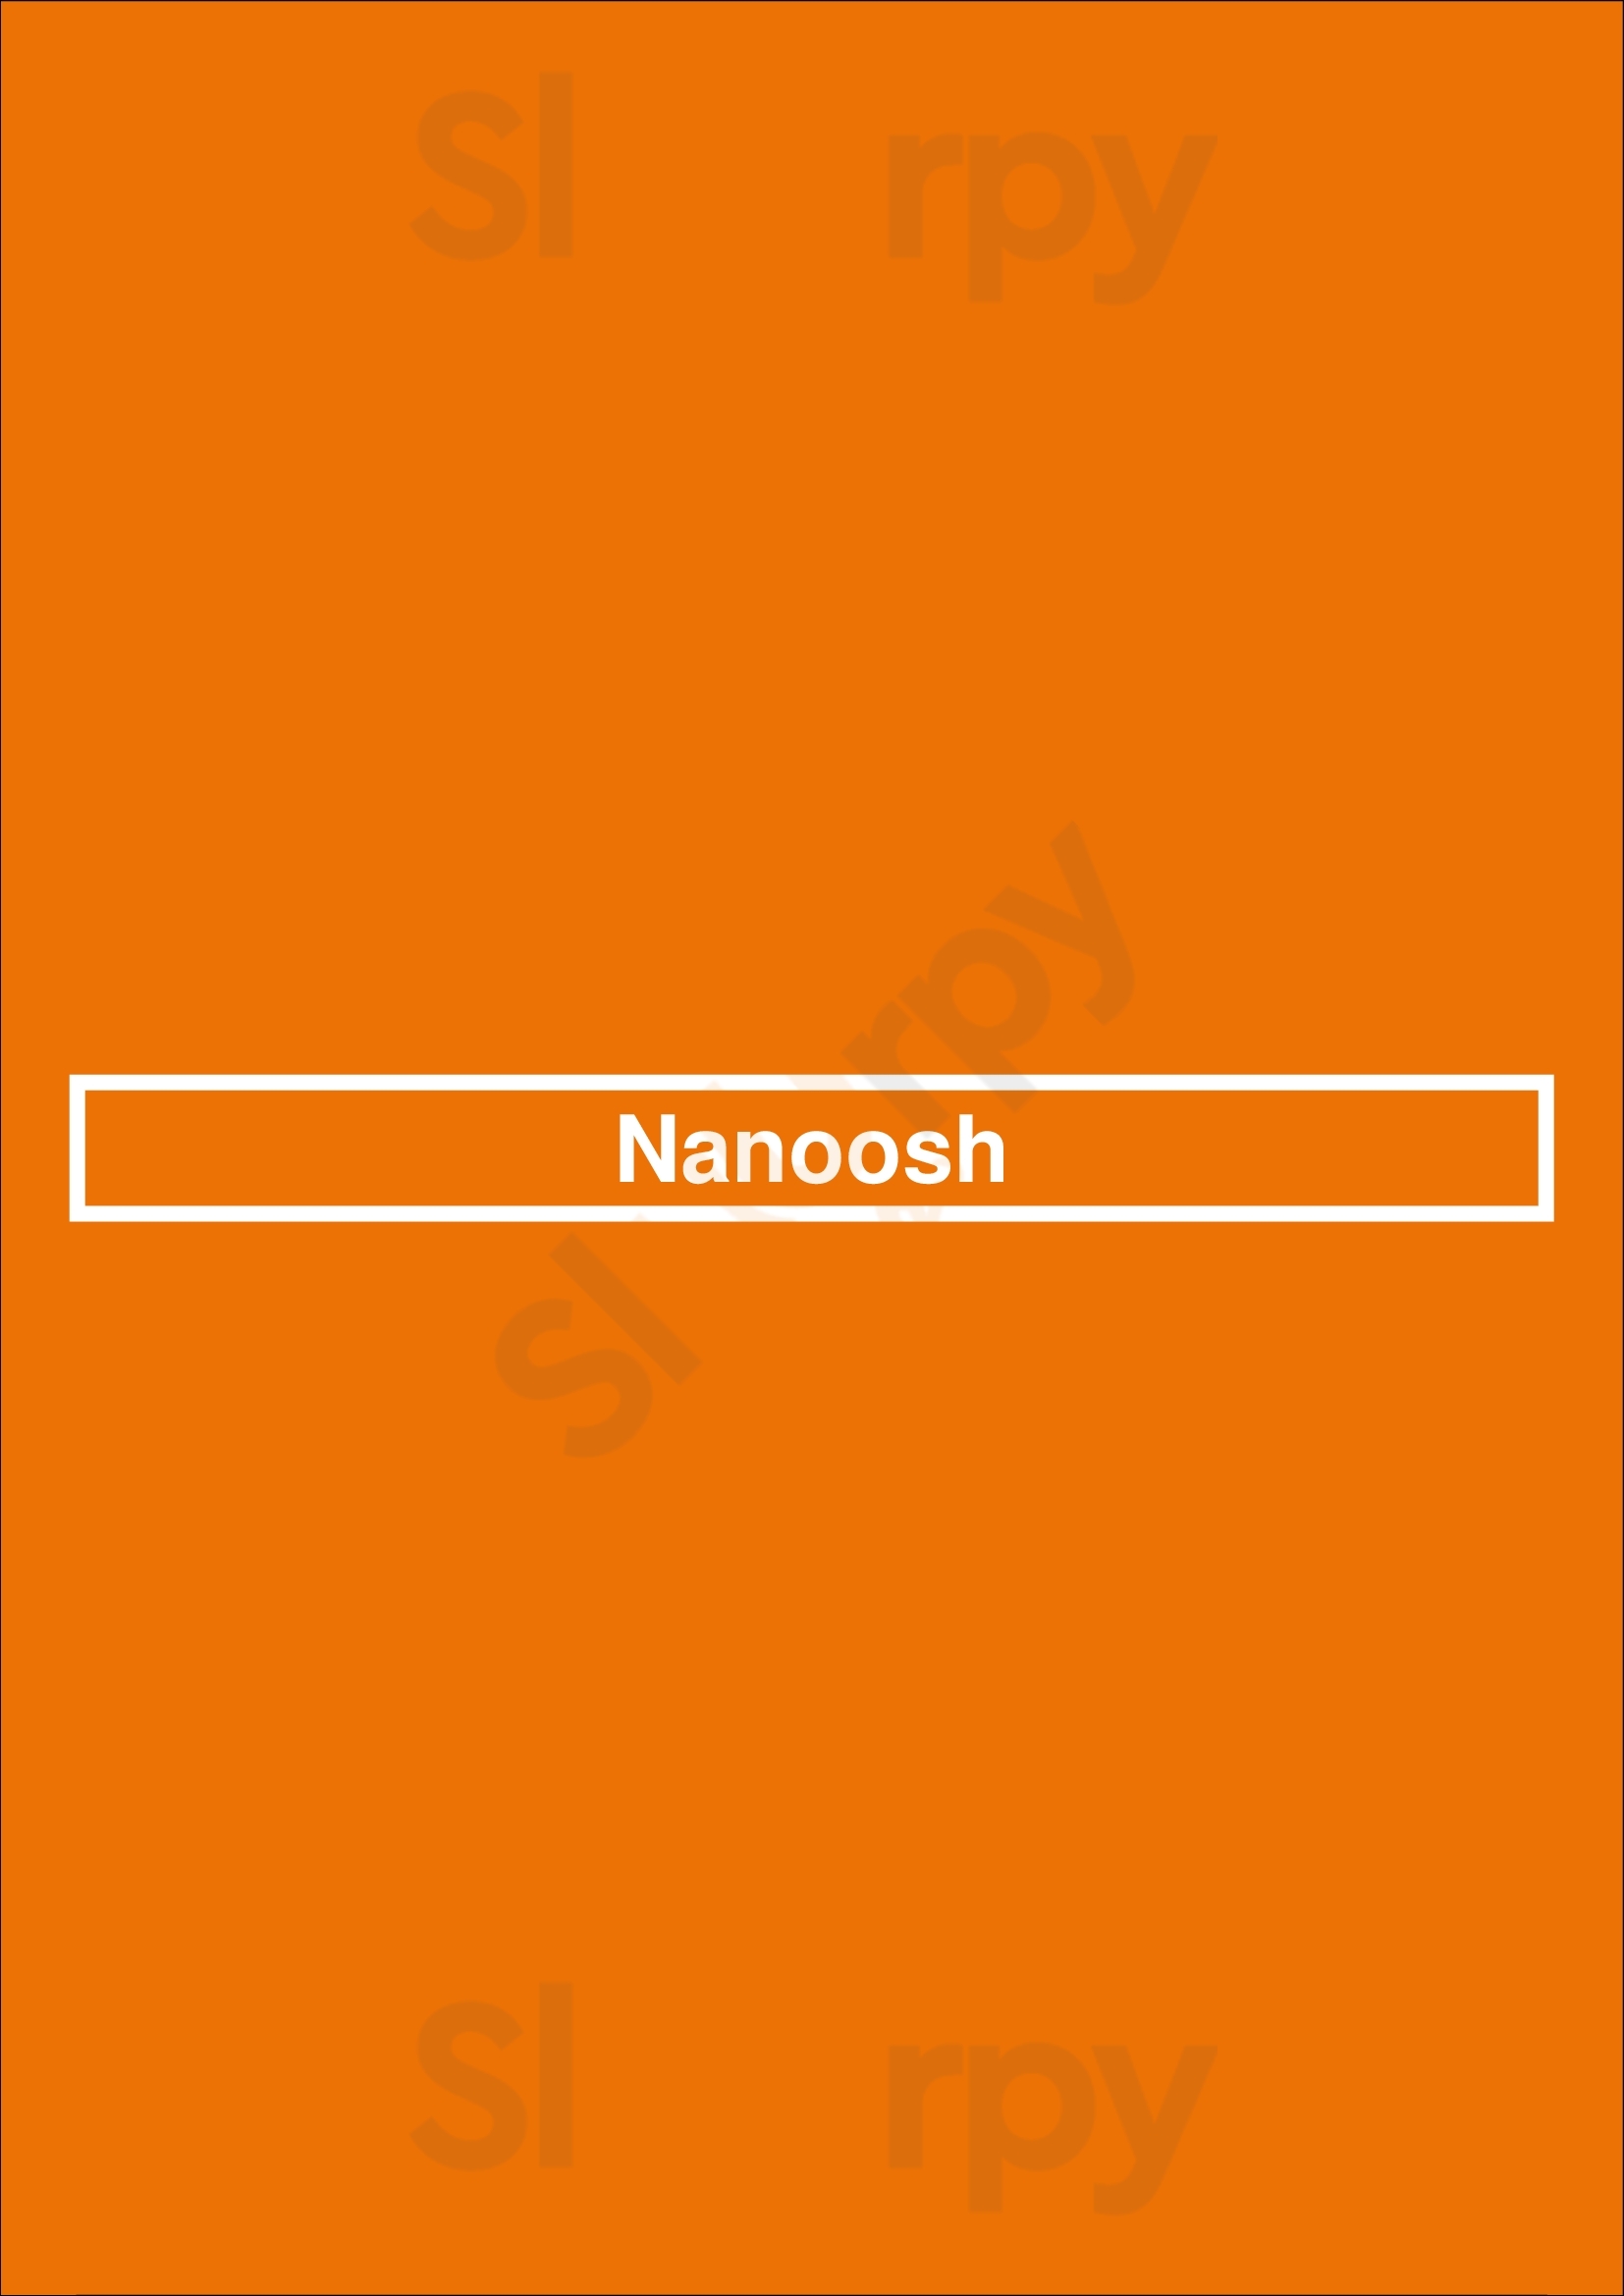 Nanoosh New York City Menu - 1